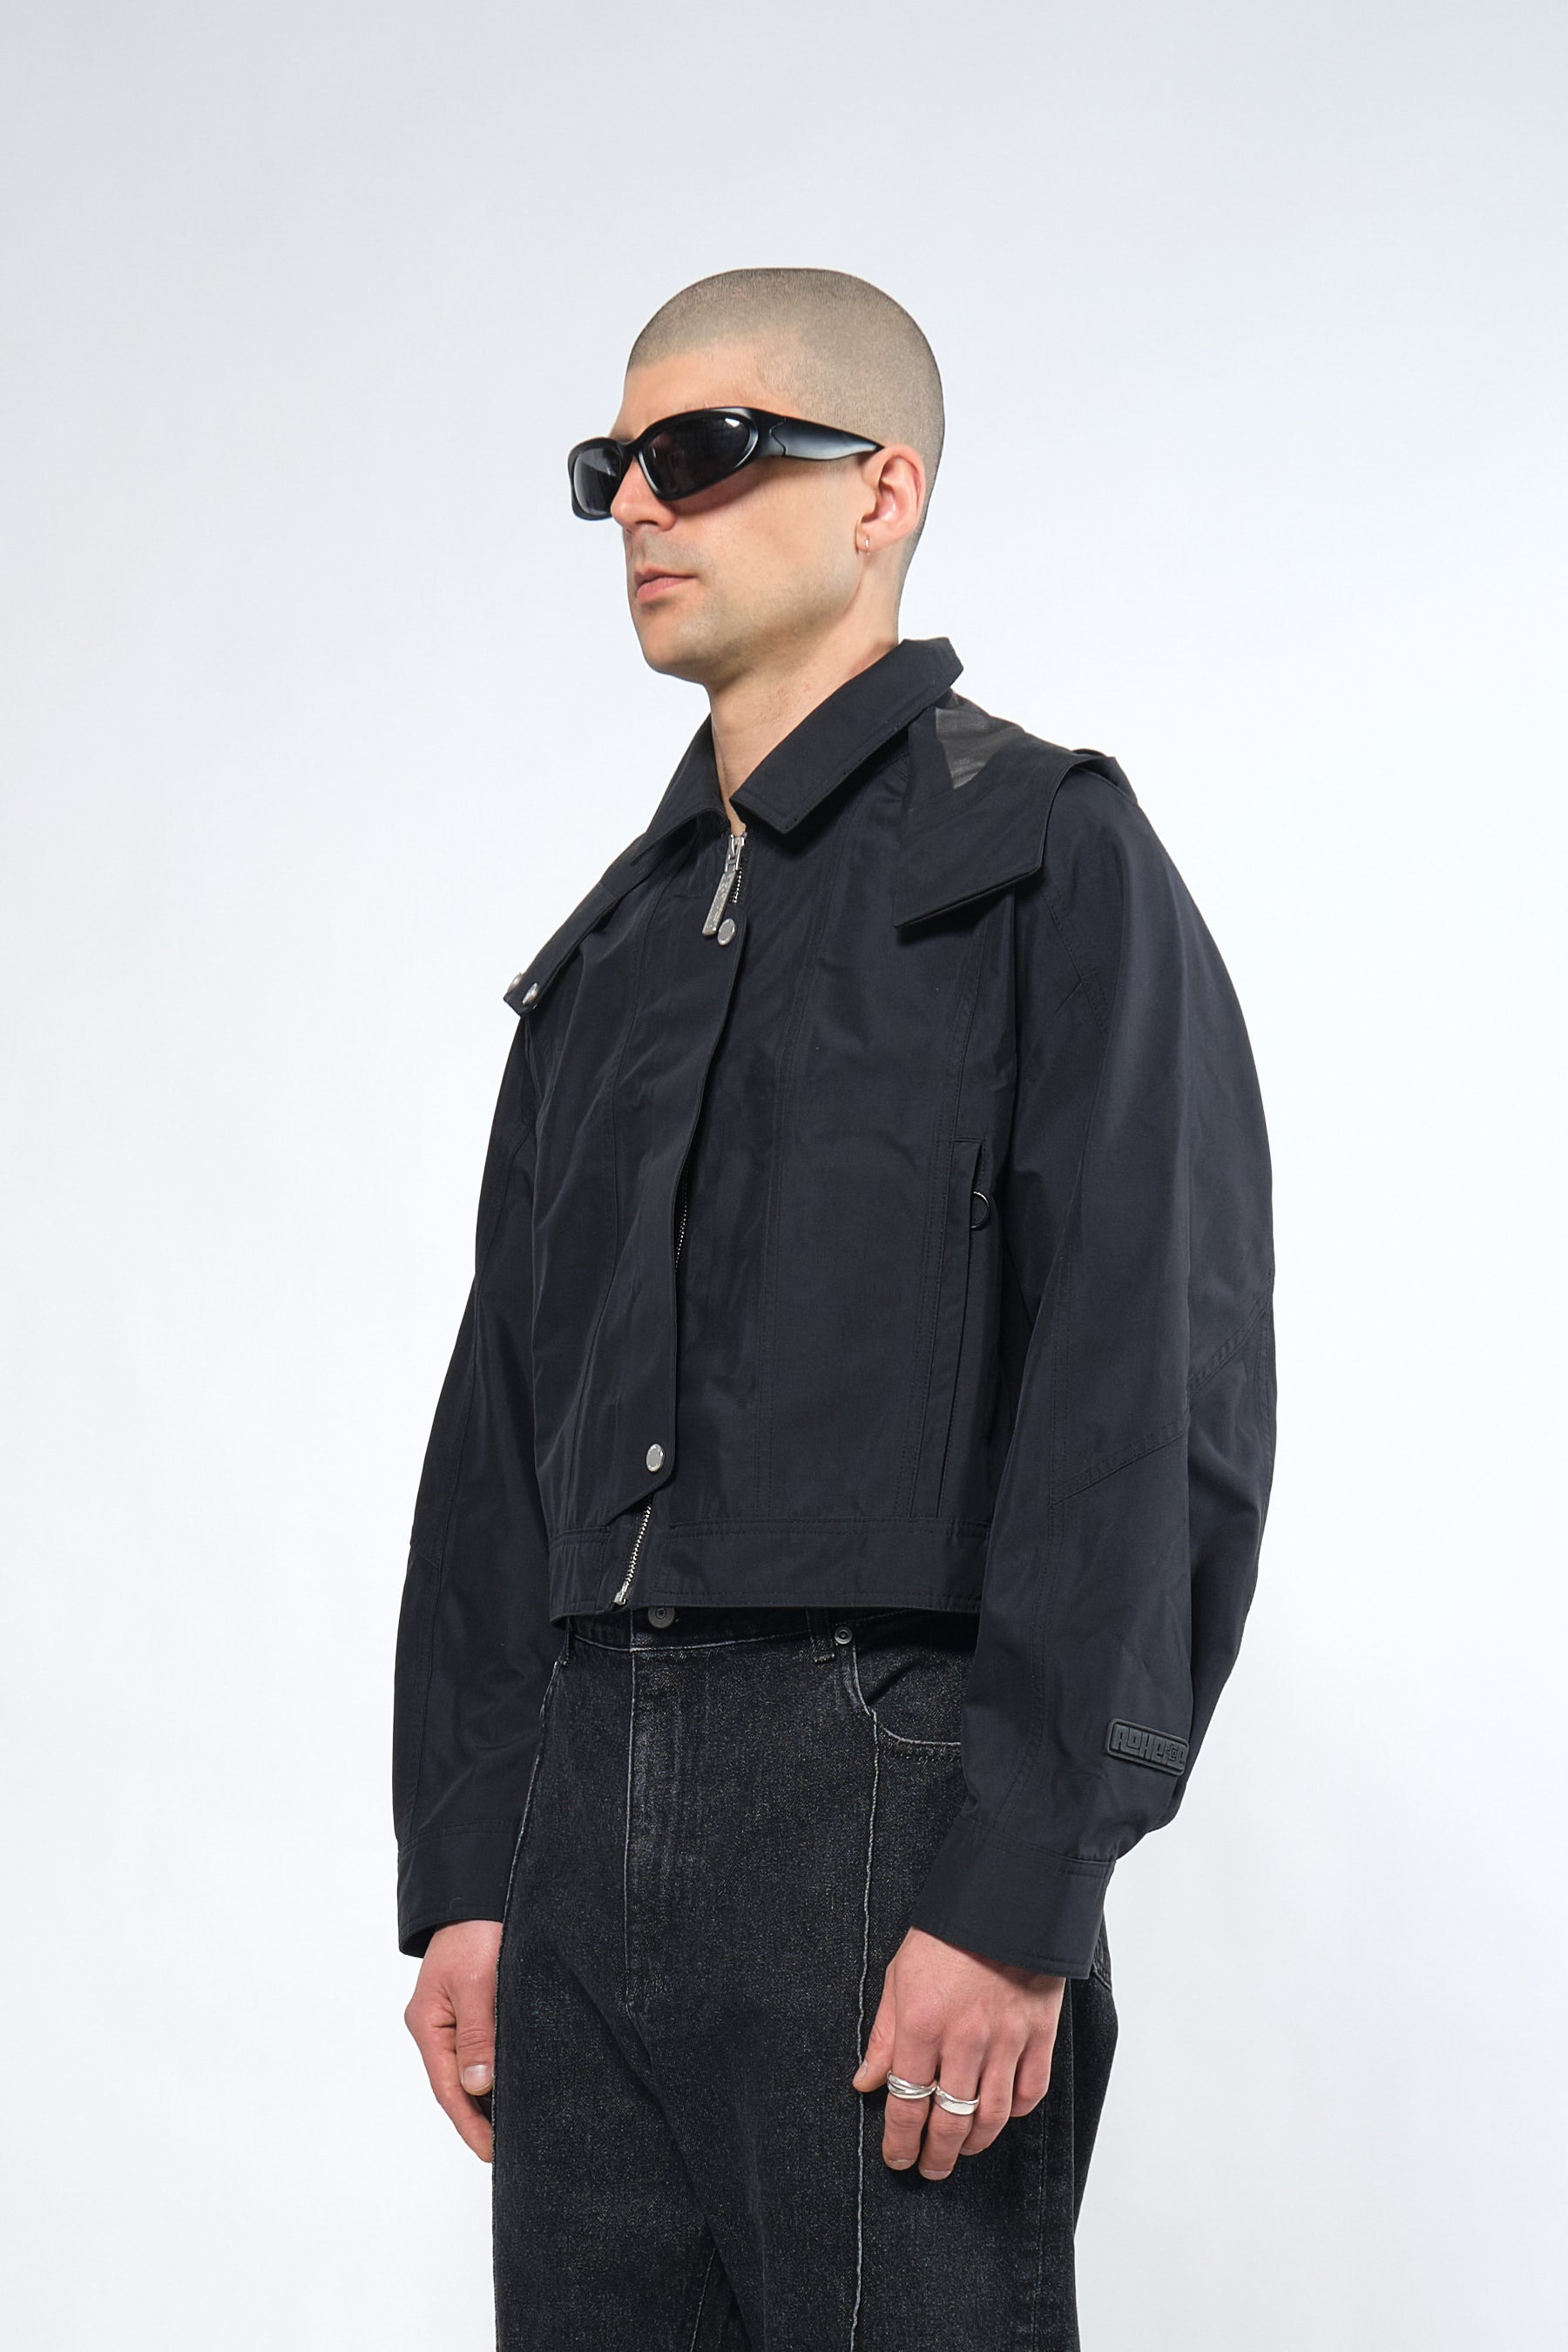  3L Black Waterproof Crop Rain Jacket with Hood - Adhere To  - 3